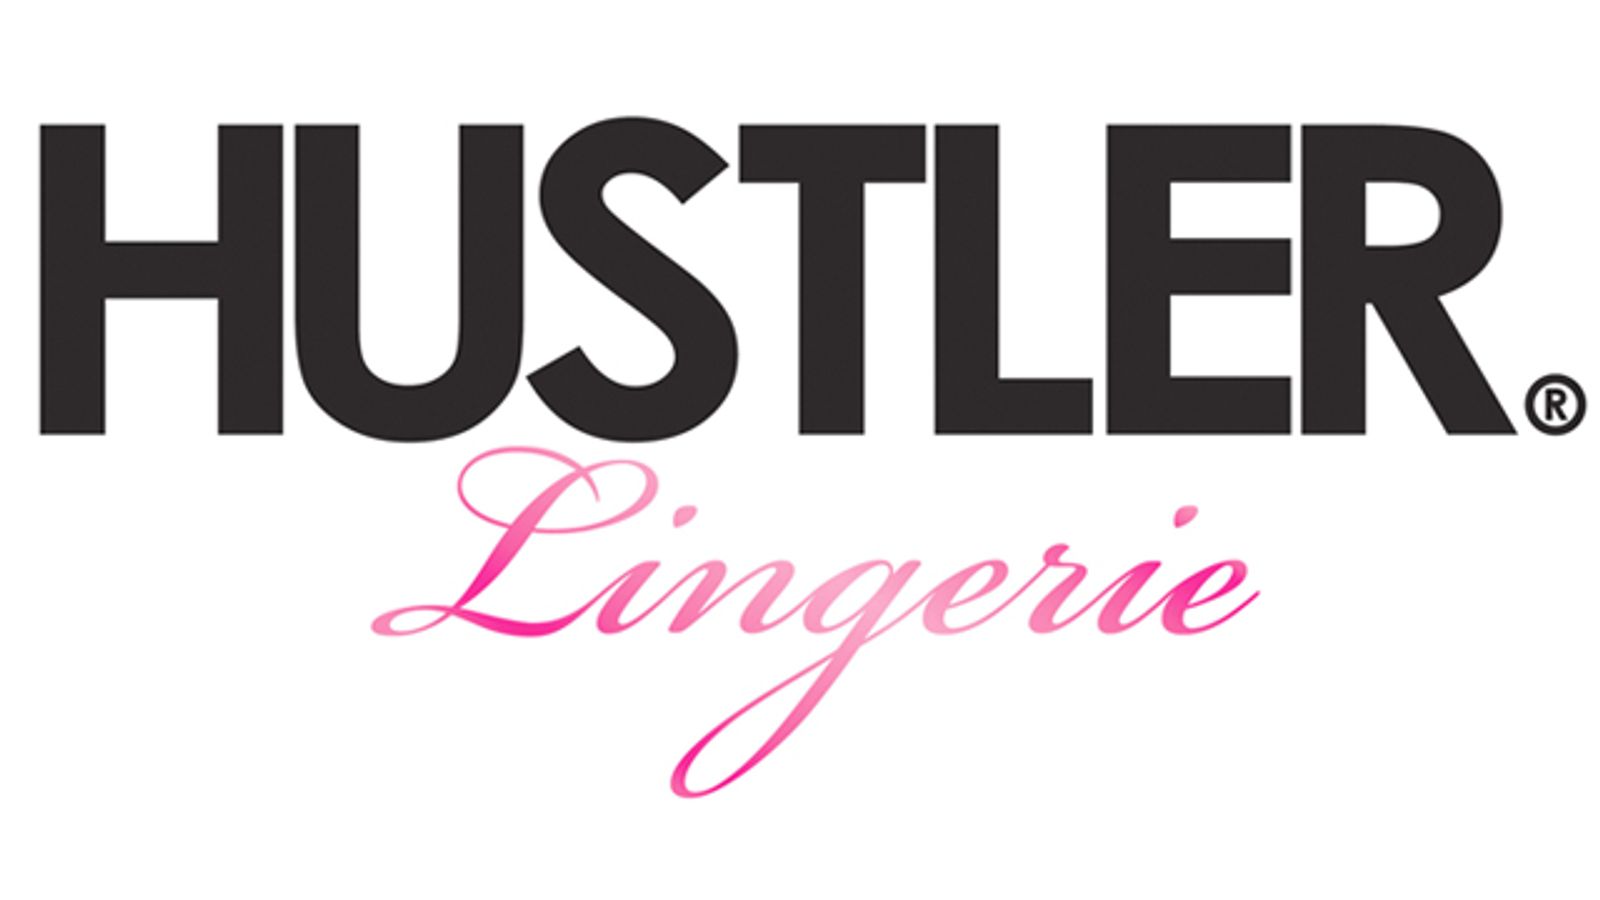 Hustler Lingerie Announces Plans For Plus-Size Collection